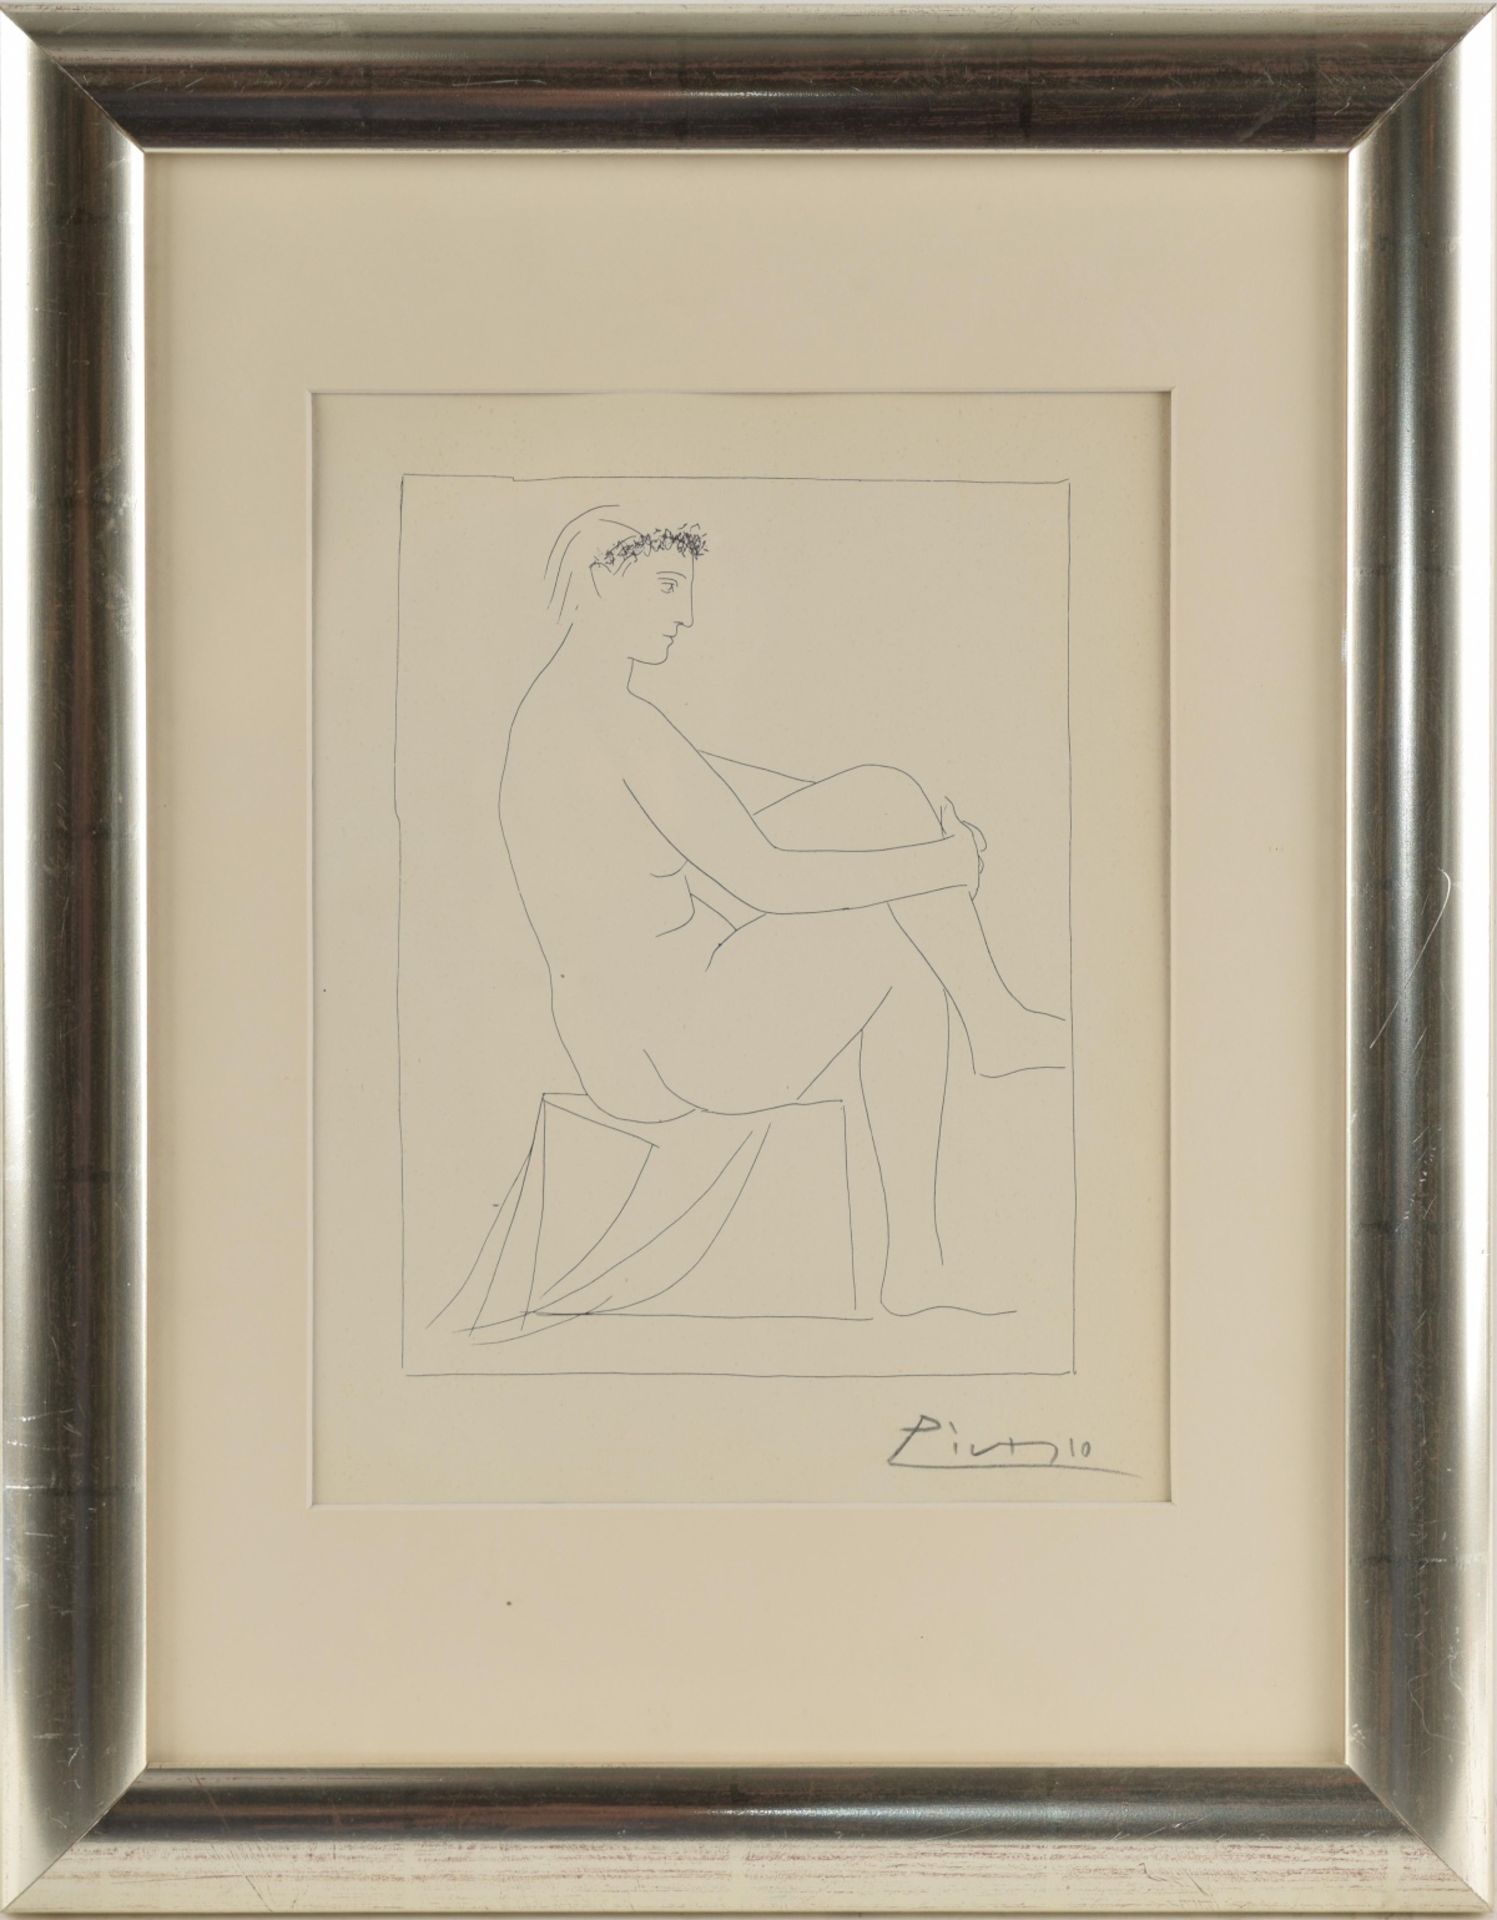 Picasso, Pablo (nach) Lithografie, weiblicher Akt, Suite Vollard, unten von fremder Hand bezeichnet, - Image 3 of 4